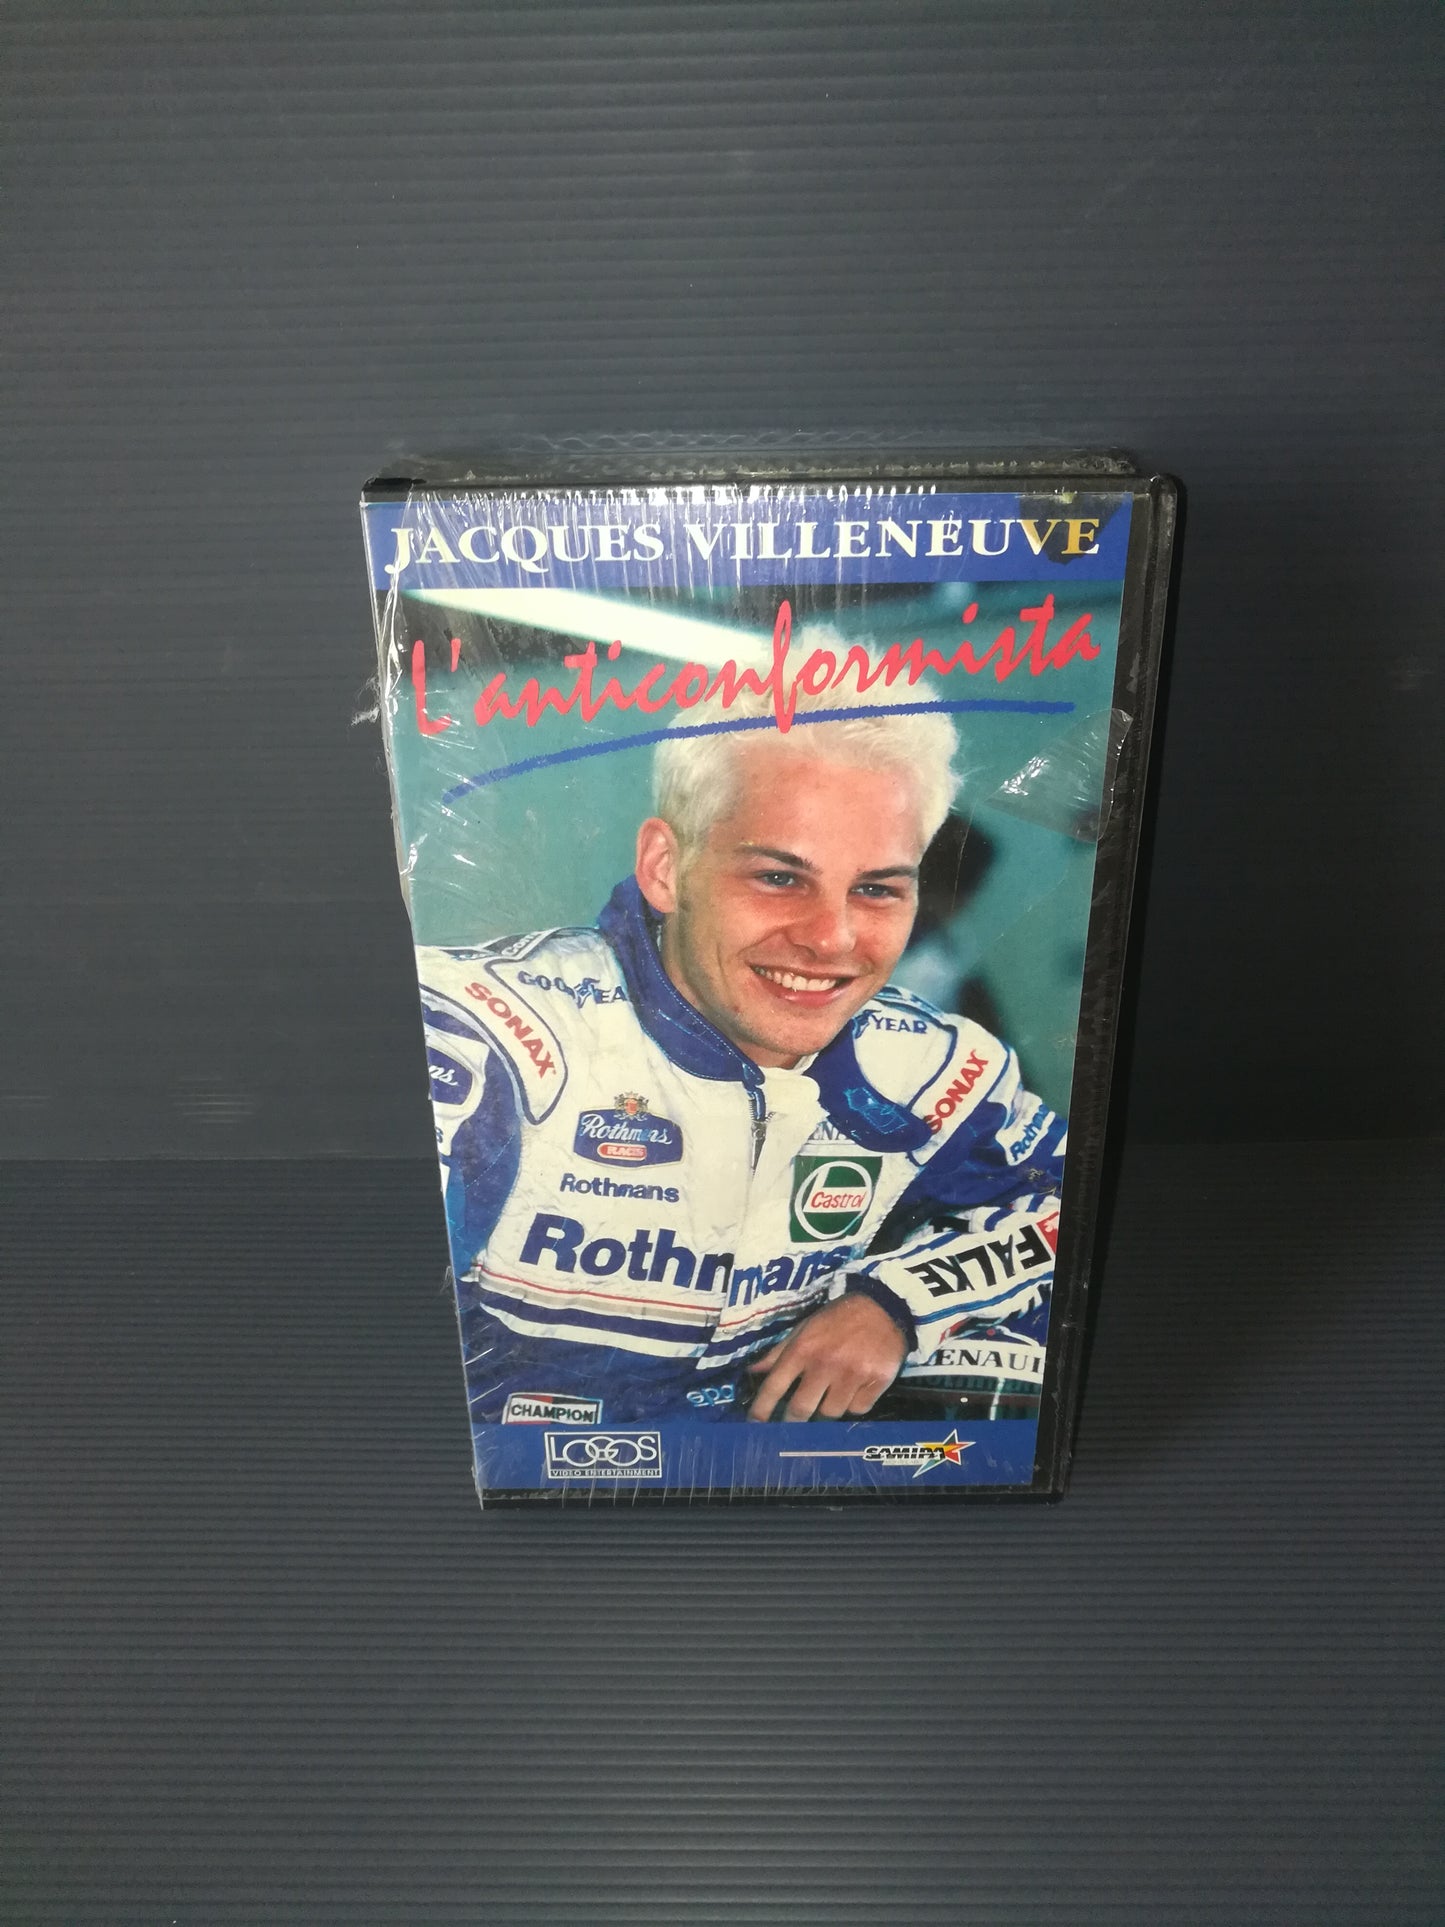 "L'Anticonformista Jacques Villeneuve" VHS Logos